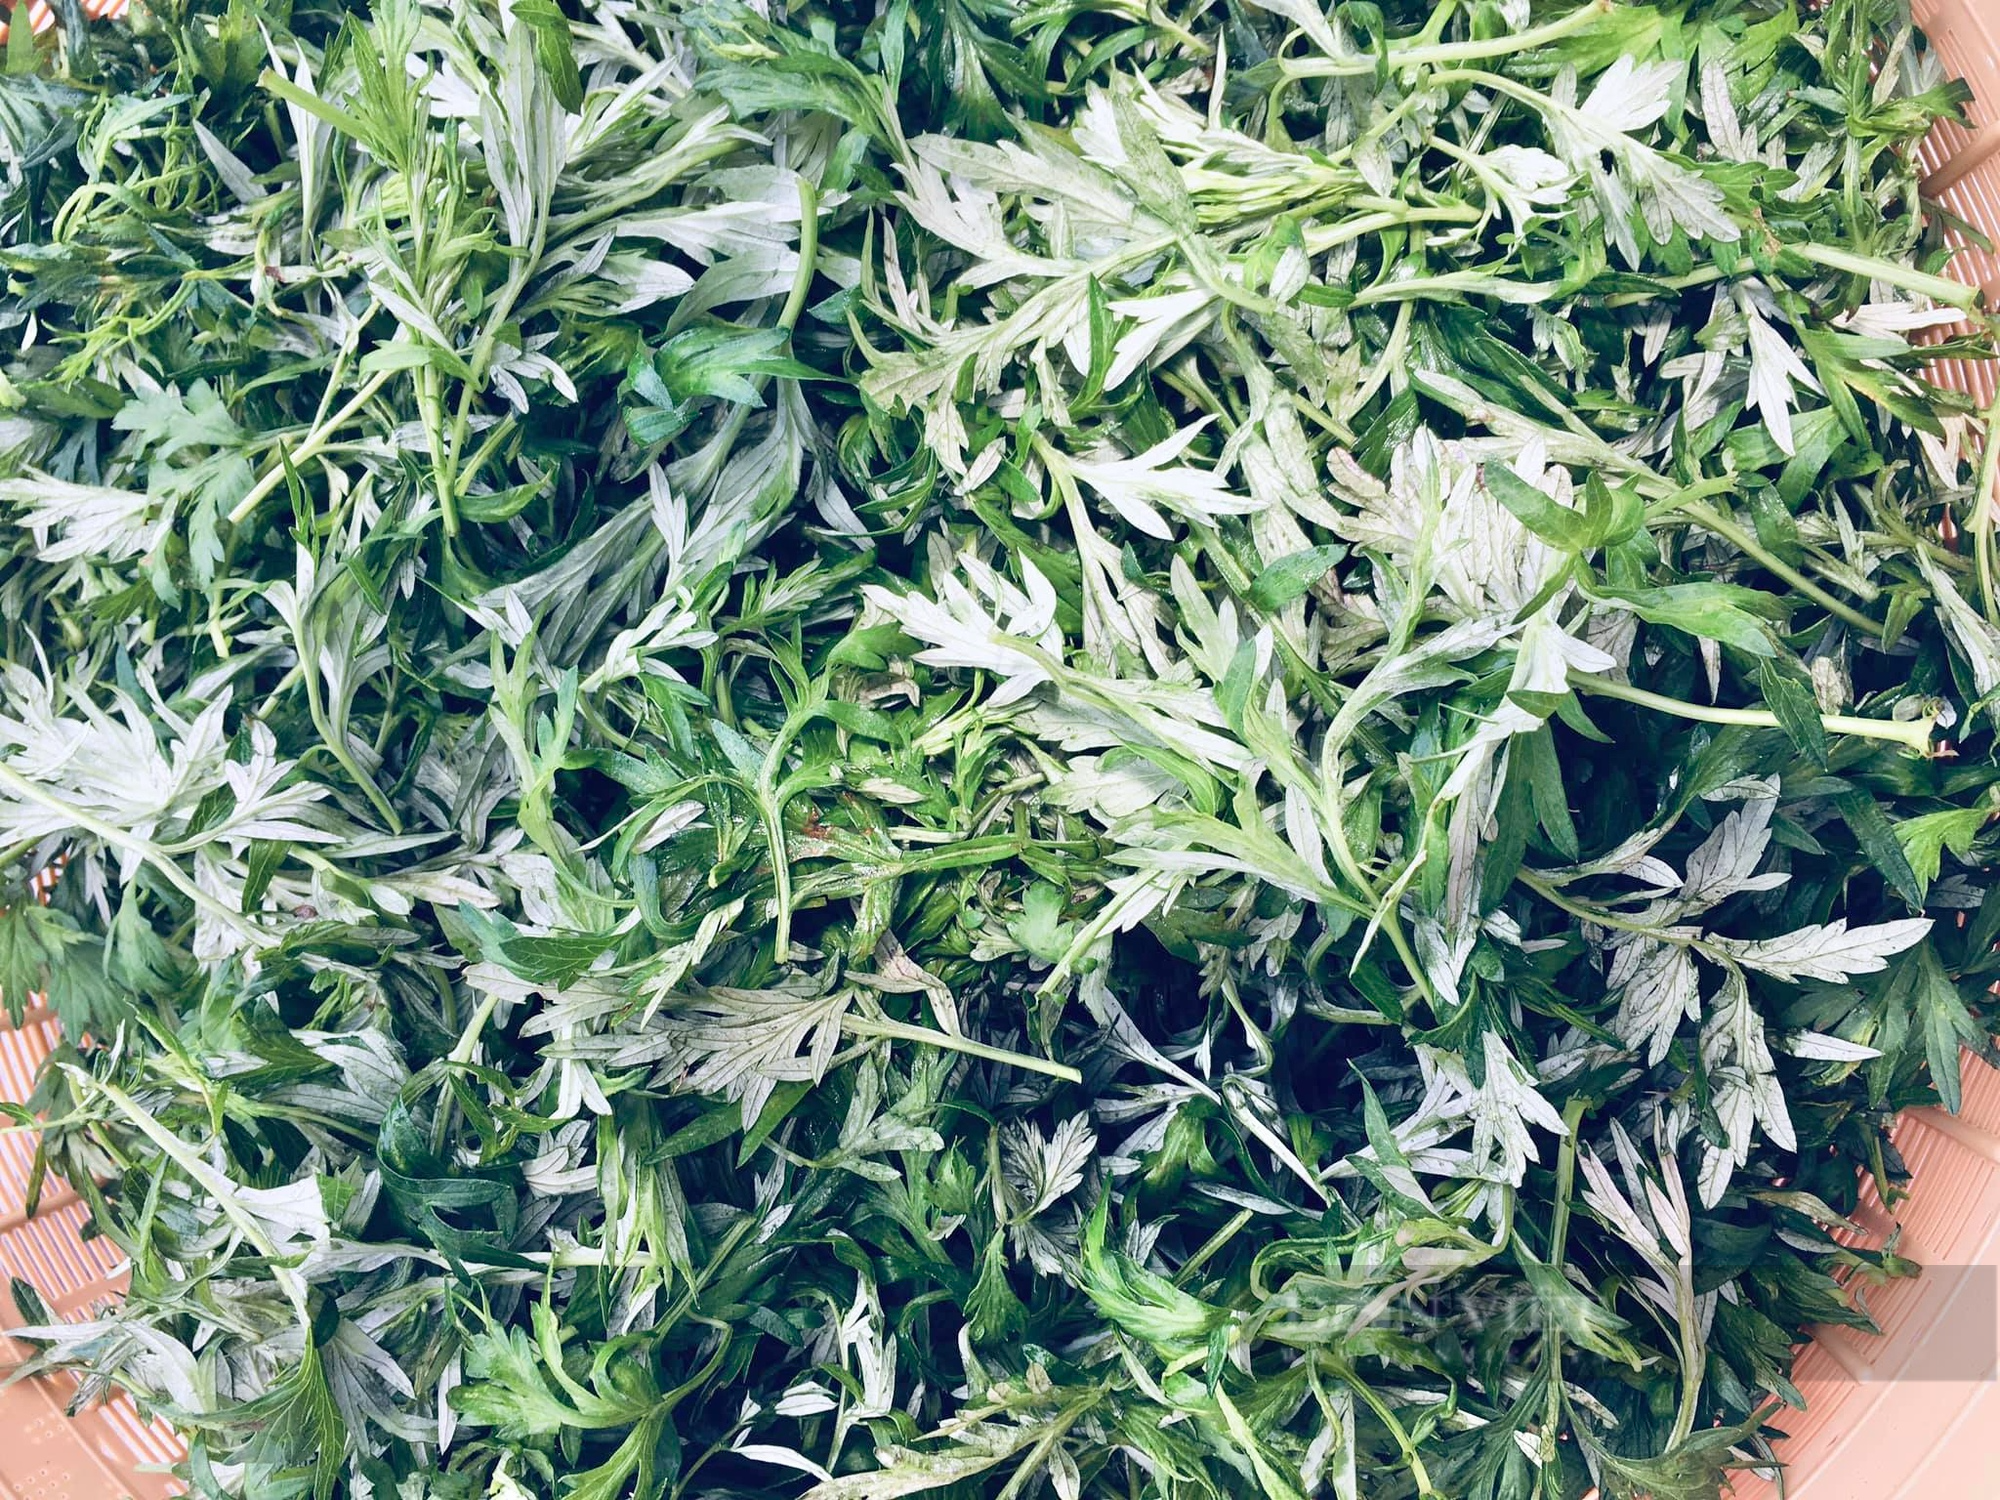 Nữ 9X Quảng Nam biến cỏ cây thành sản phẩm “vừa xanh vừa sạch” làm bao chị em mê mẩn - Ảnh 4.